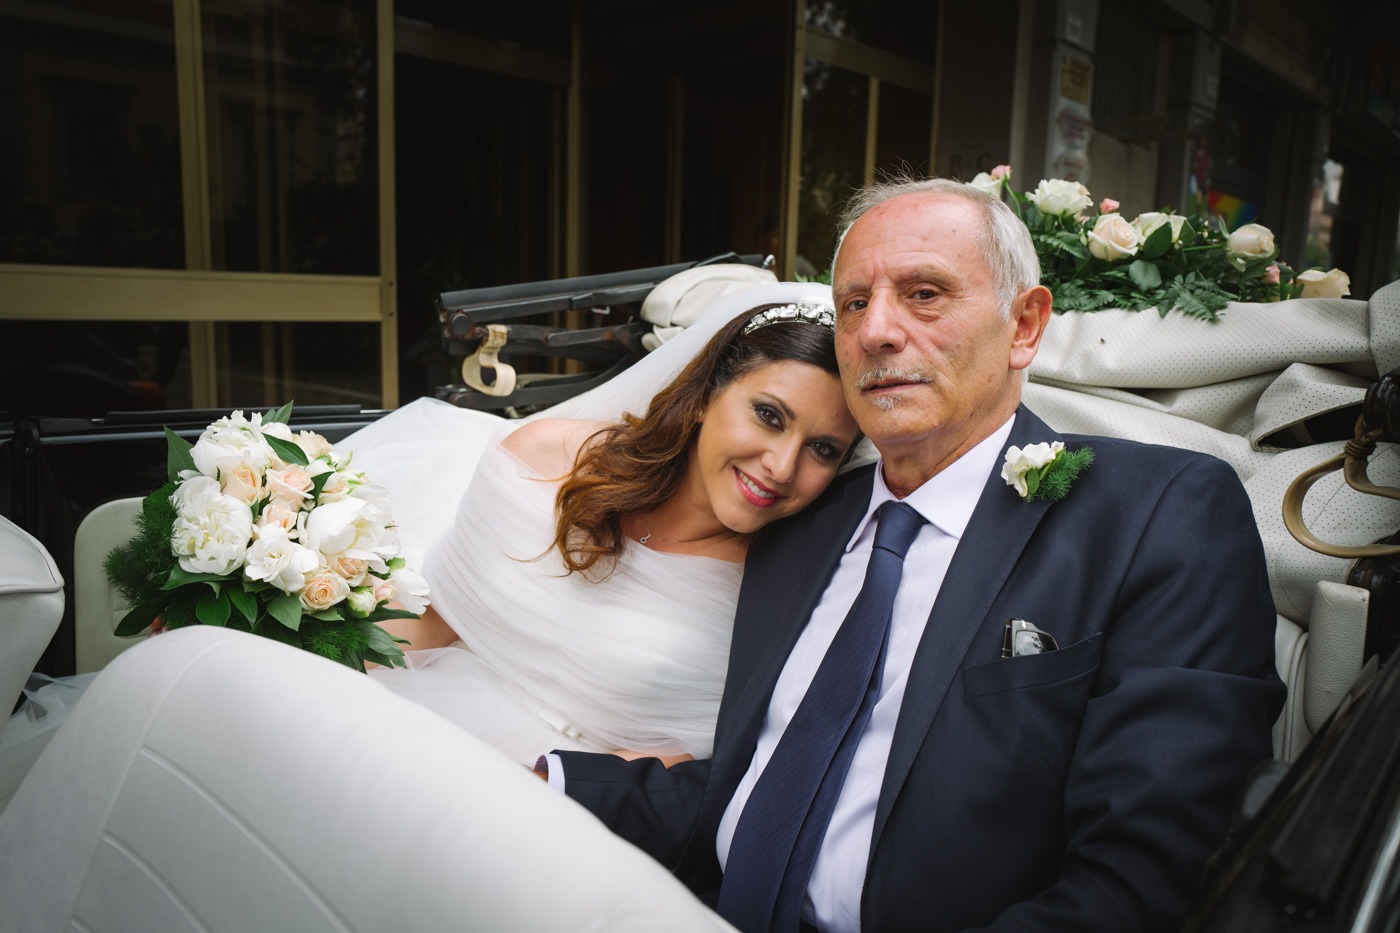 Get Married in Sicily: Andrea & Alba - Giuseppe Torretta